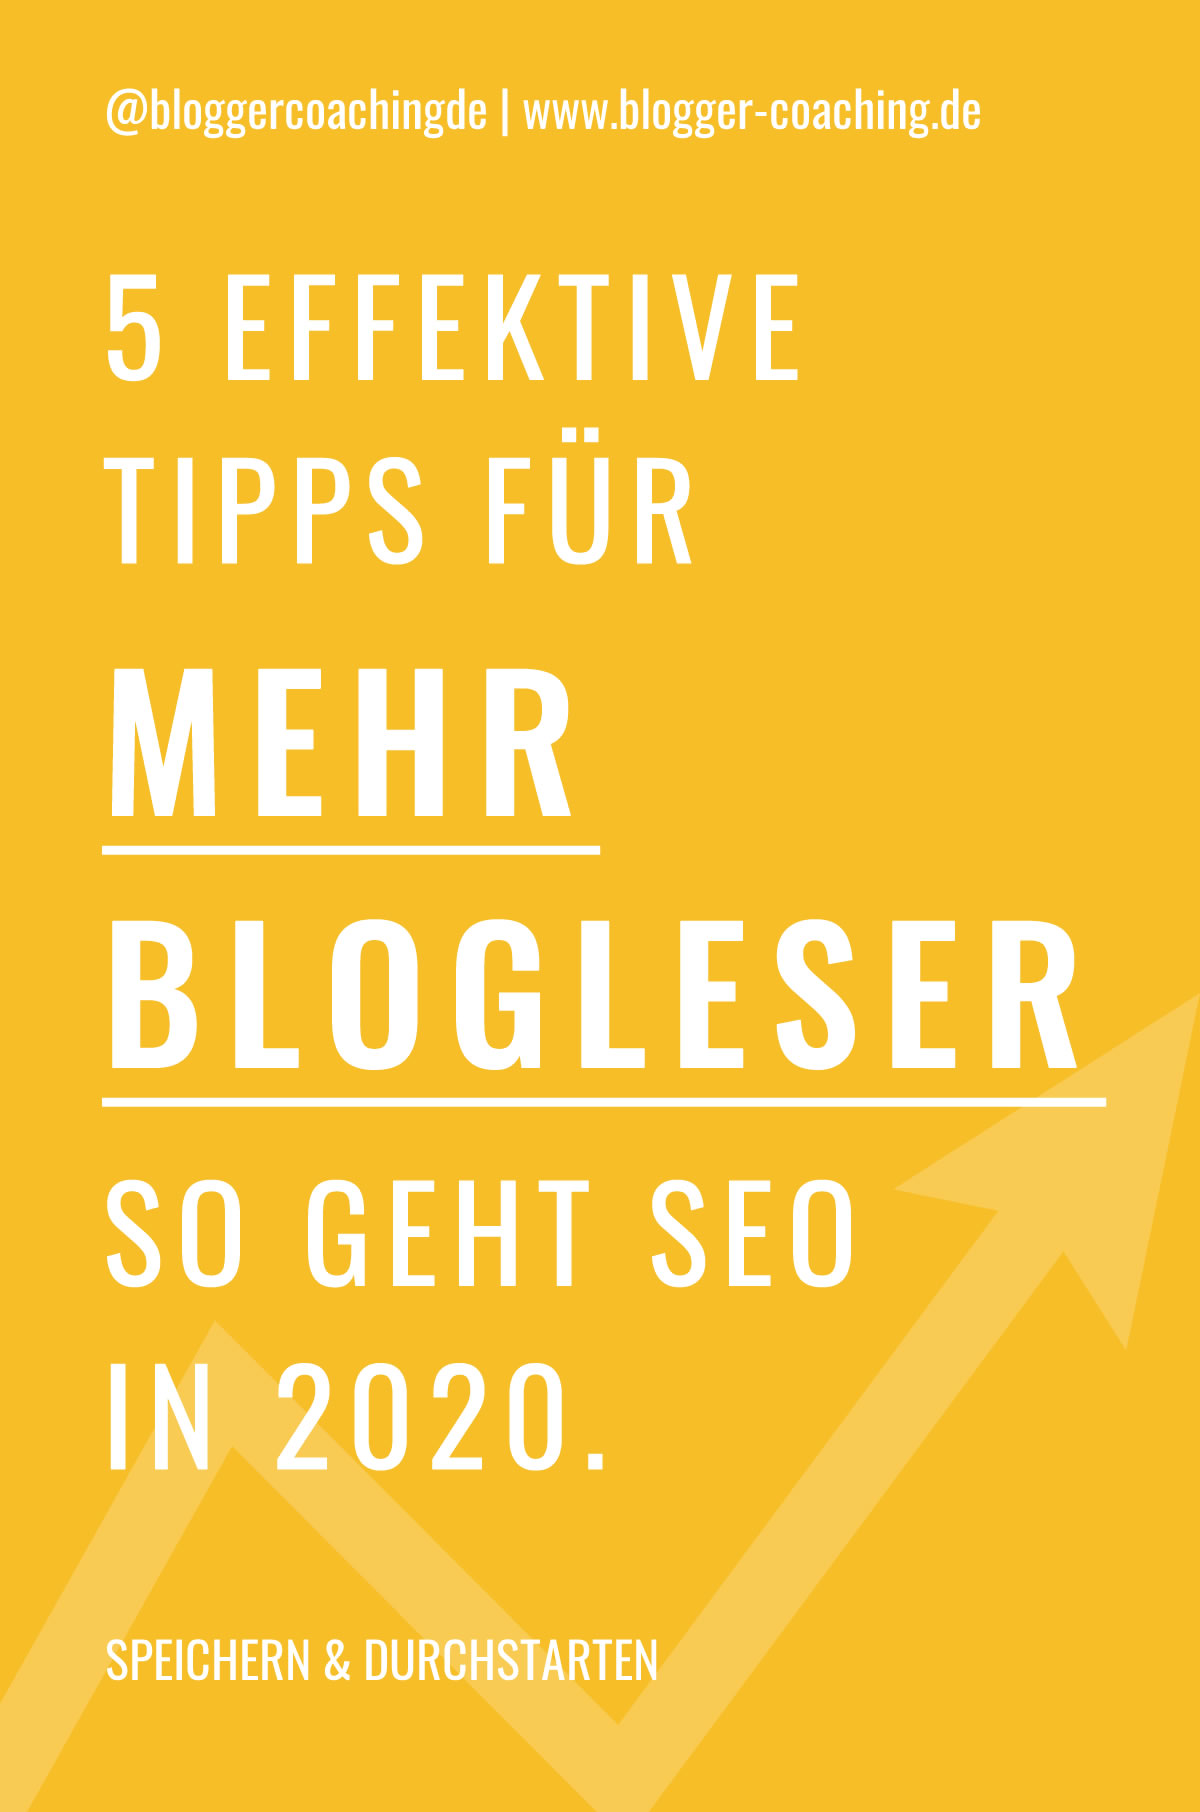 5 effektive SEO Tipps für mehr Blogleser (2020) | Blogger-Coaching.de - Tipps & Kurse für Blogger